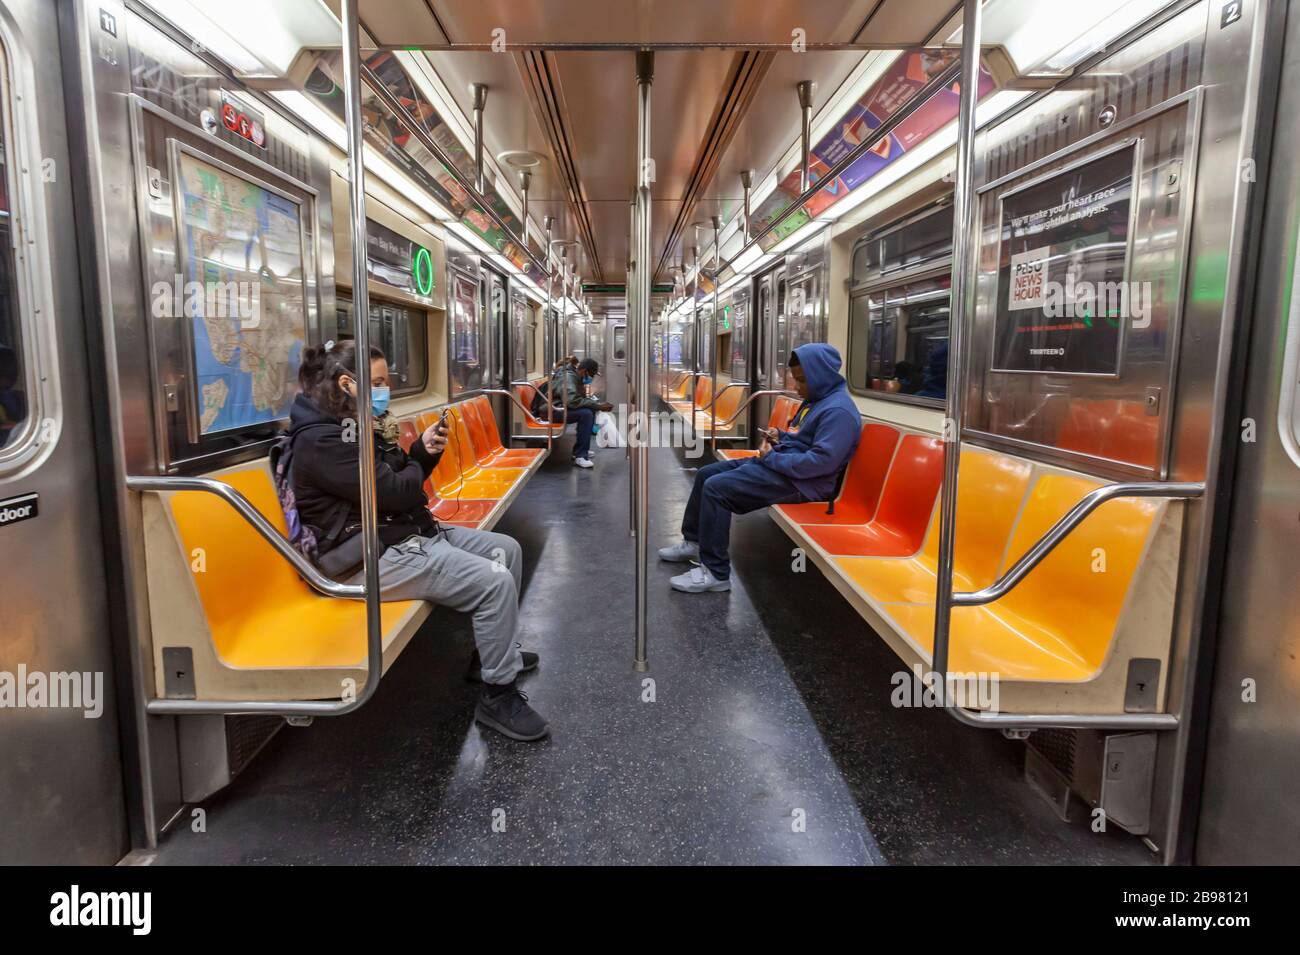 Very few passengers riding the subway in New York City because of COVID-19, Coronavirus. Stock Photo